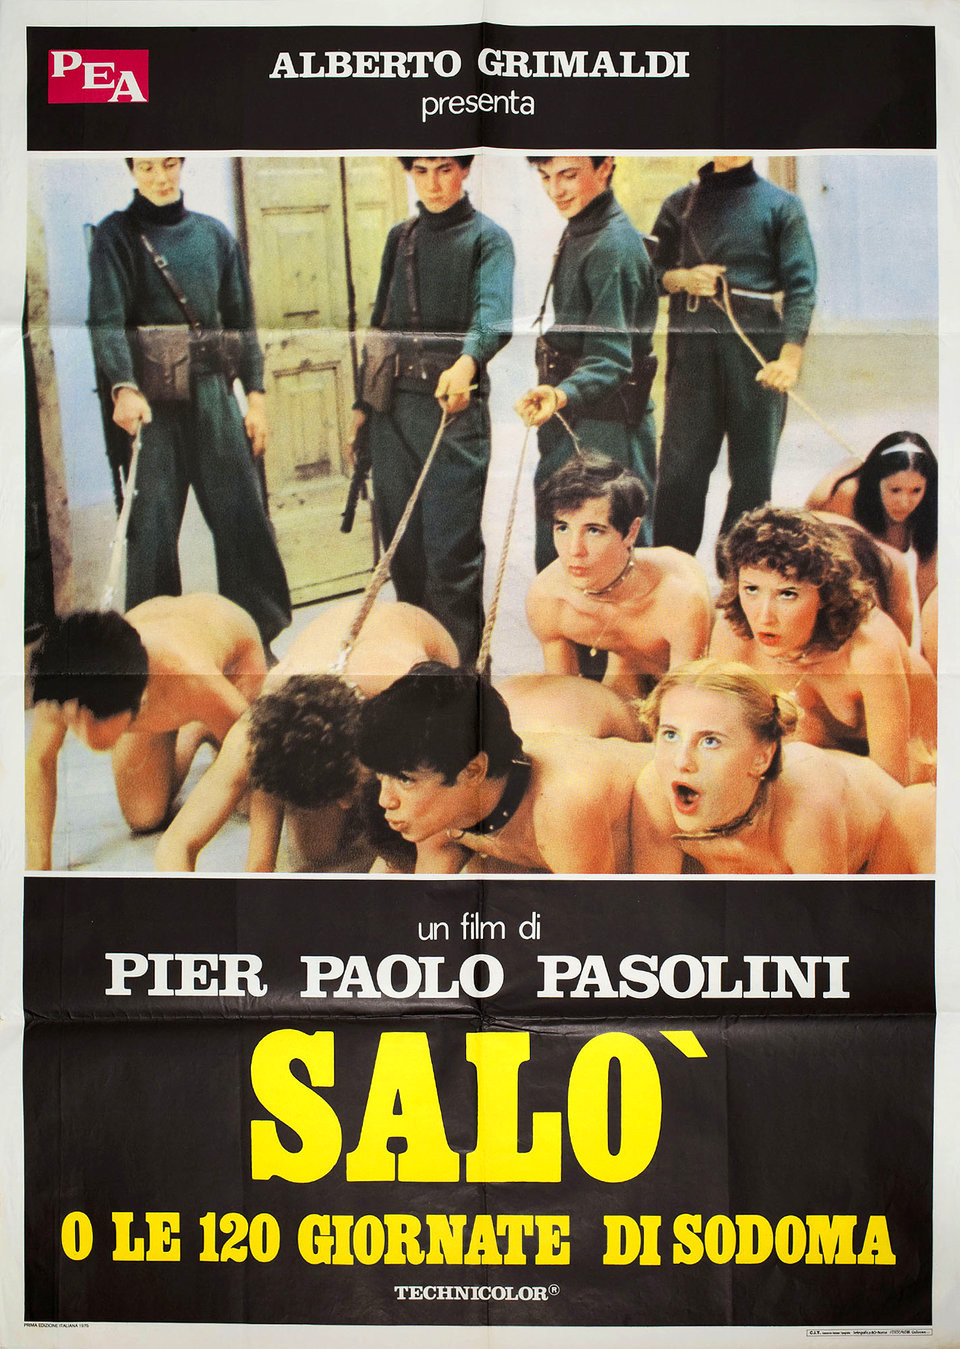  Salò o le 120 giornate di Sodoma (1975), film by Pier Paolo Pasolini